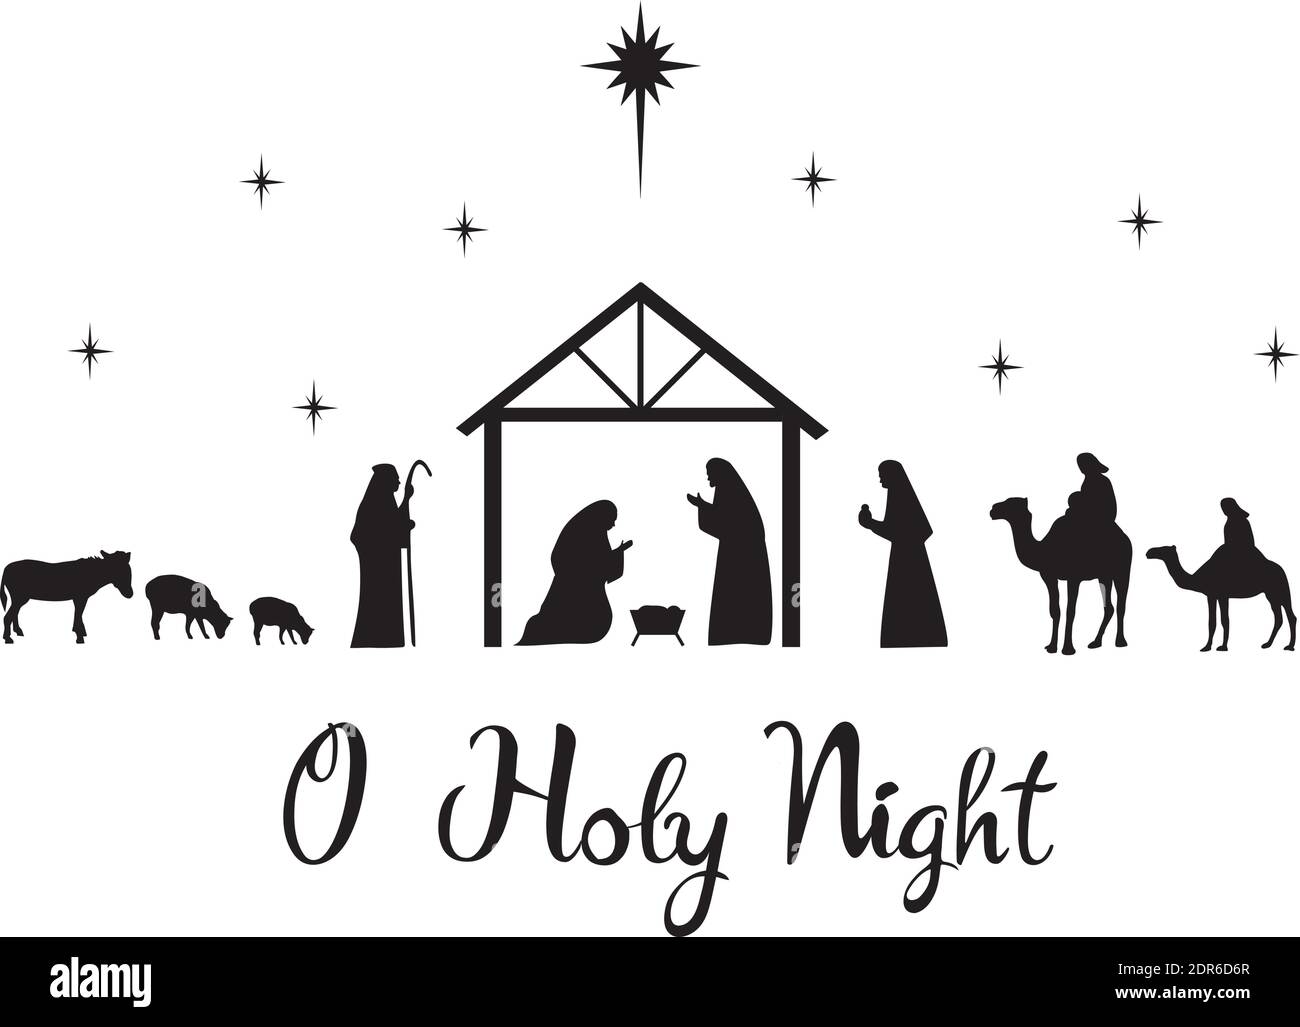 Illustration vectorielle de la scène de Nativité. Paix, joie, fond de Noël avec une étoile. Illustration de Vecteur